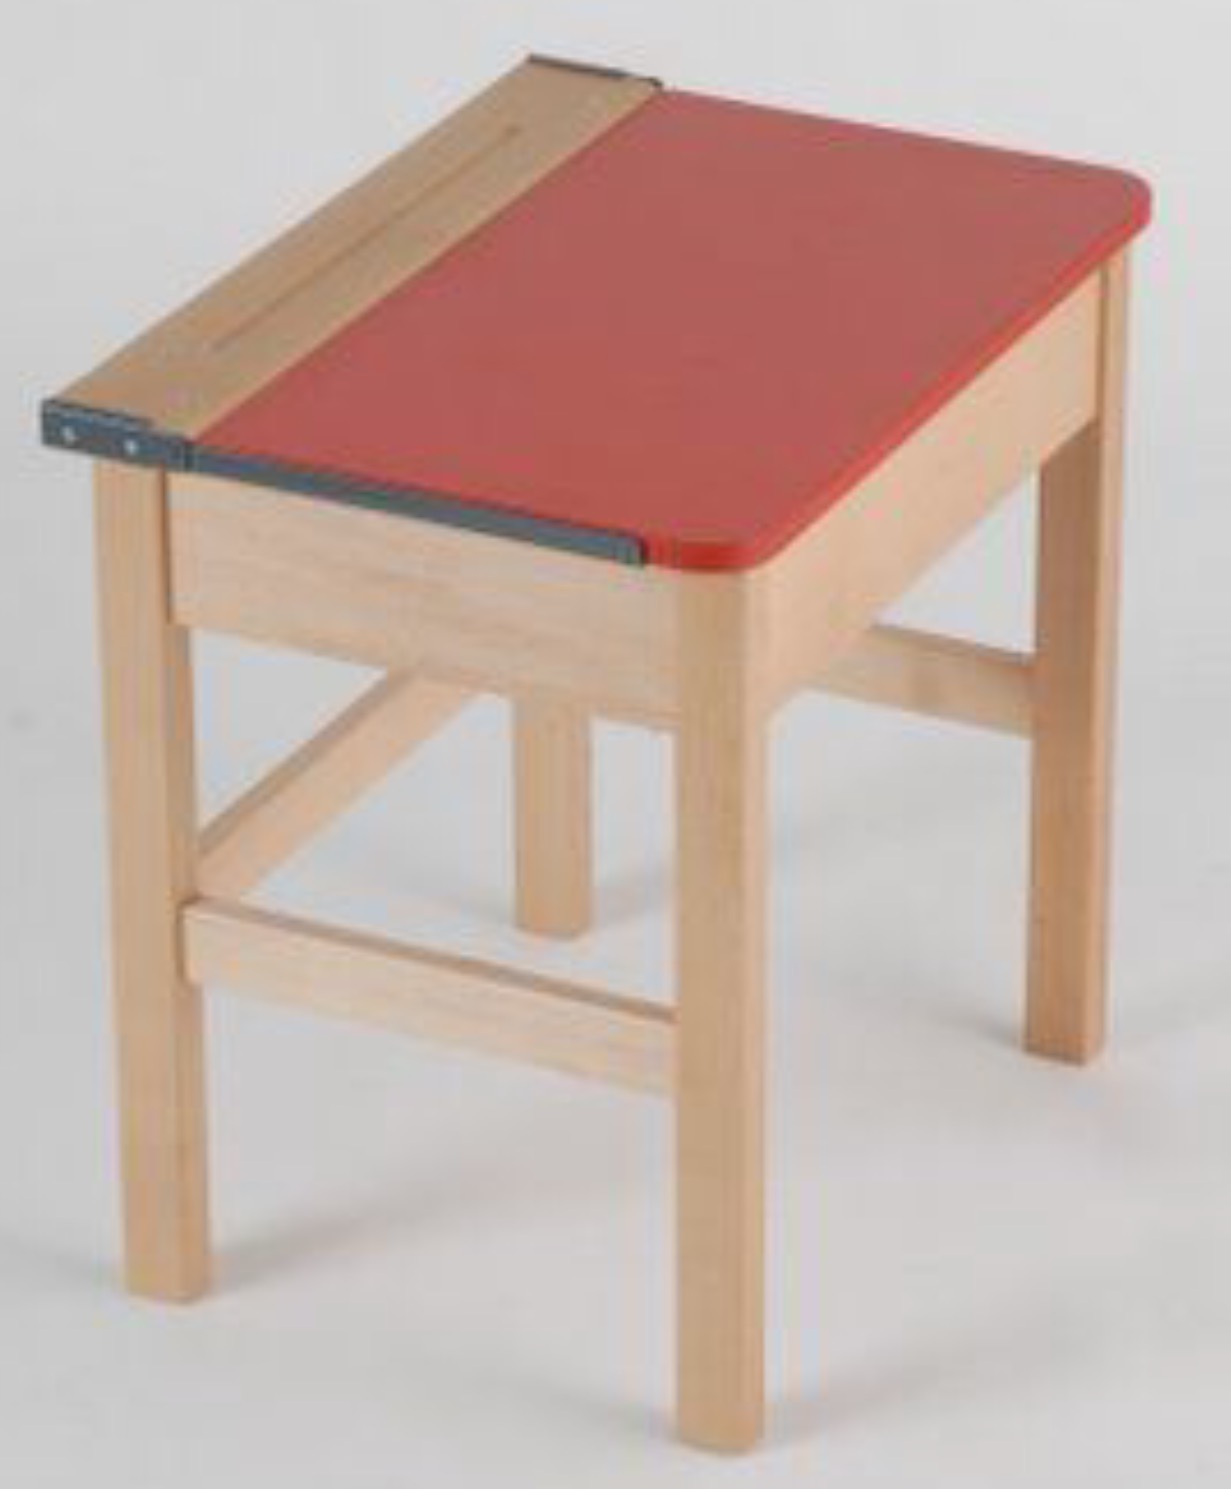 Beech Single Locker Wooden Desk Red  Top 650h 